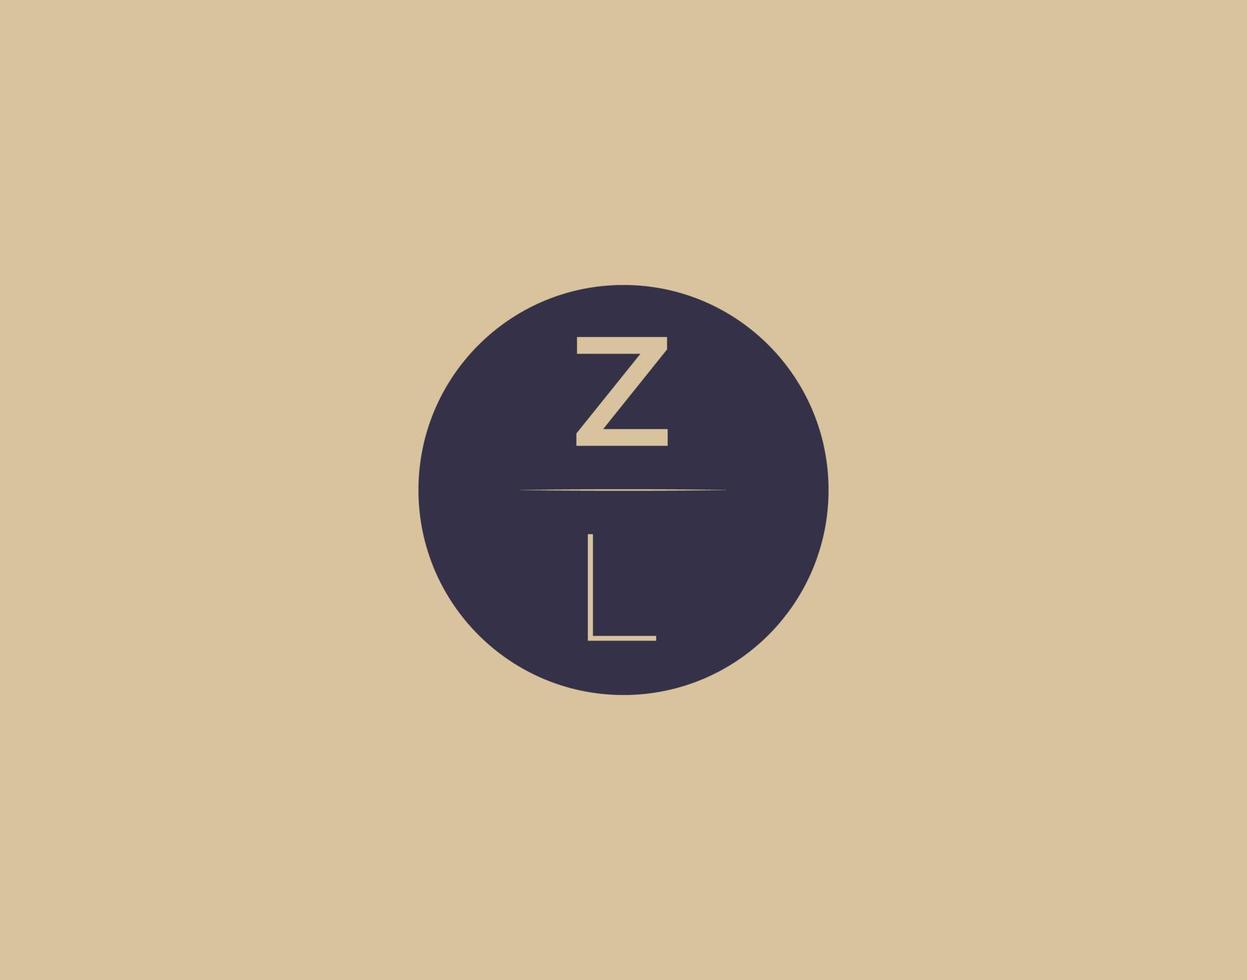 ZL letter modern elegant logo design vector images